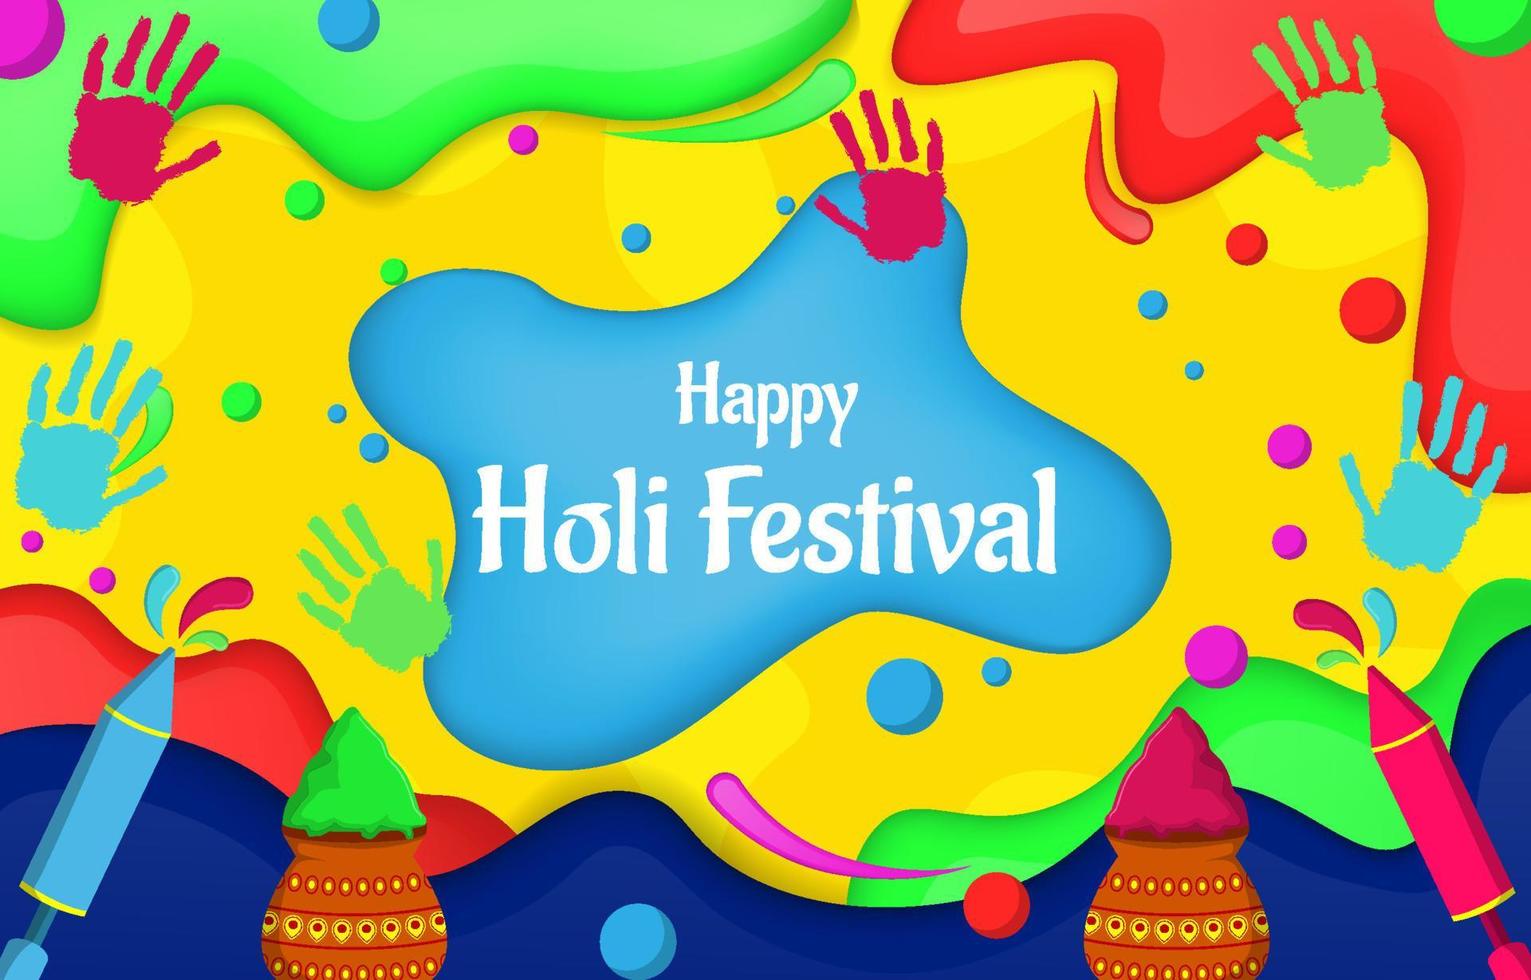 Holi Festival Background vector